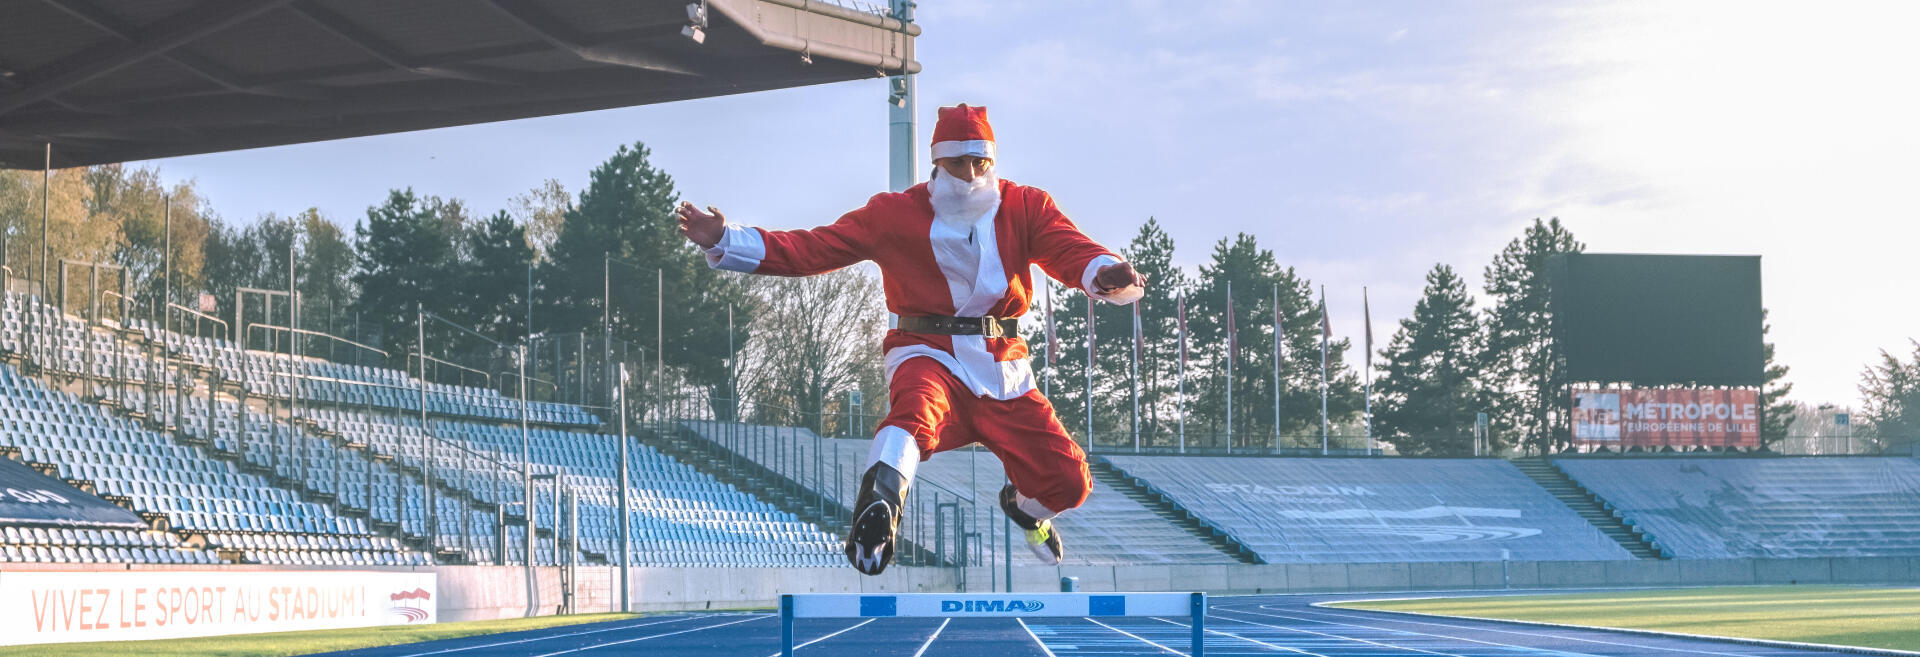 Le Père Noël est-il sportif ?